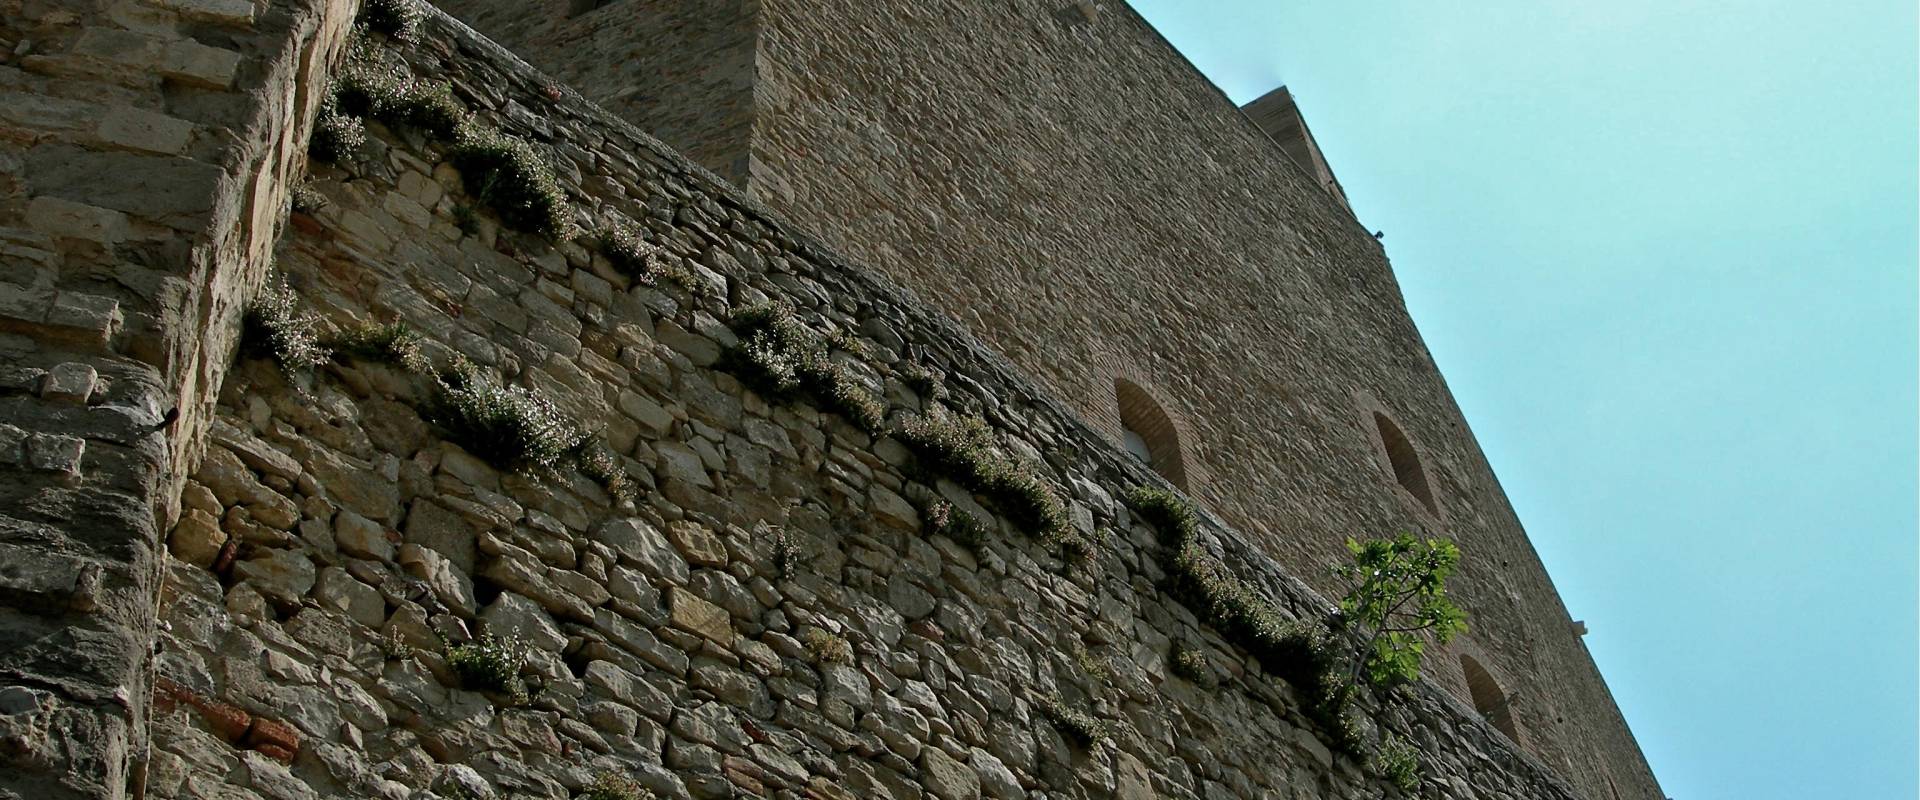 Mura e Torrione della Rocca photo by Caba2011